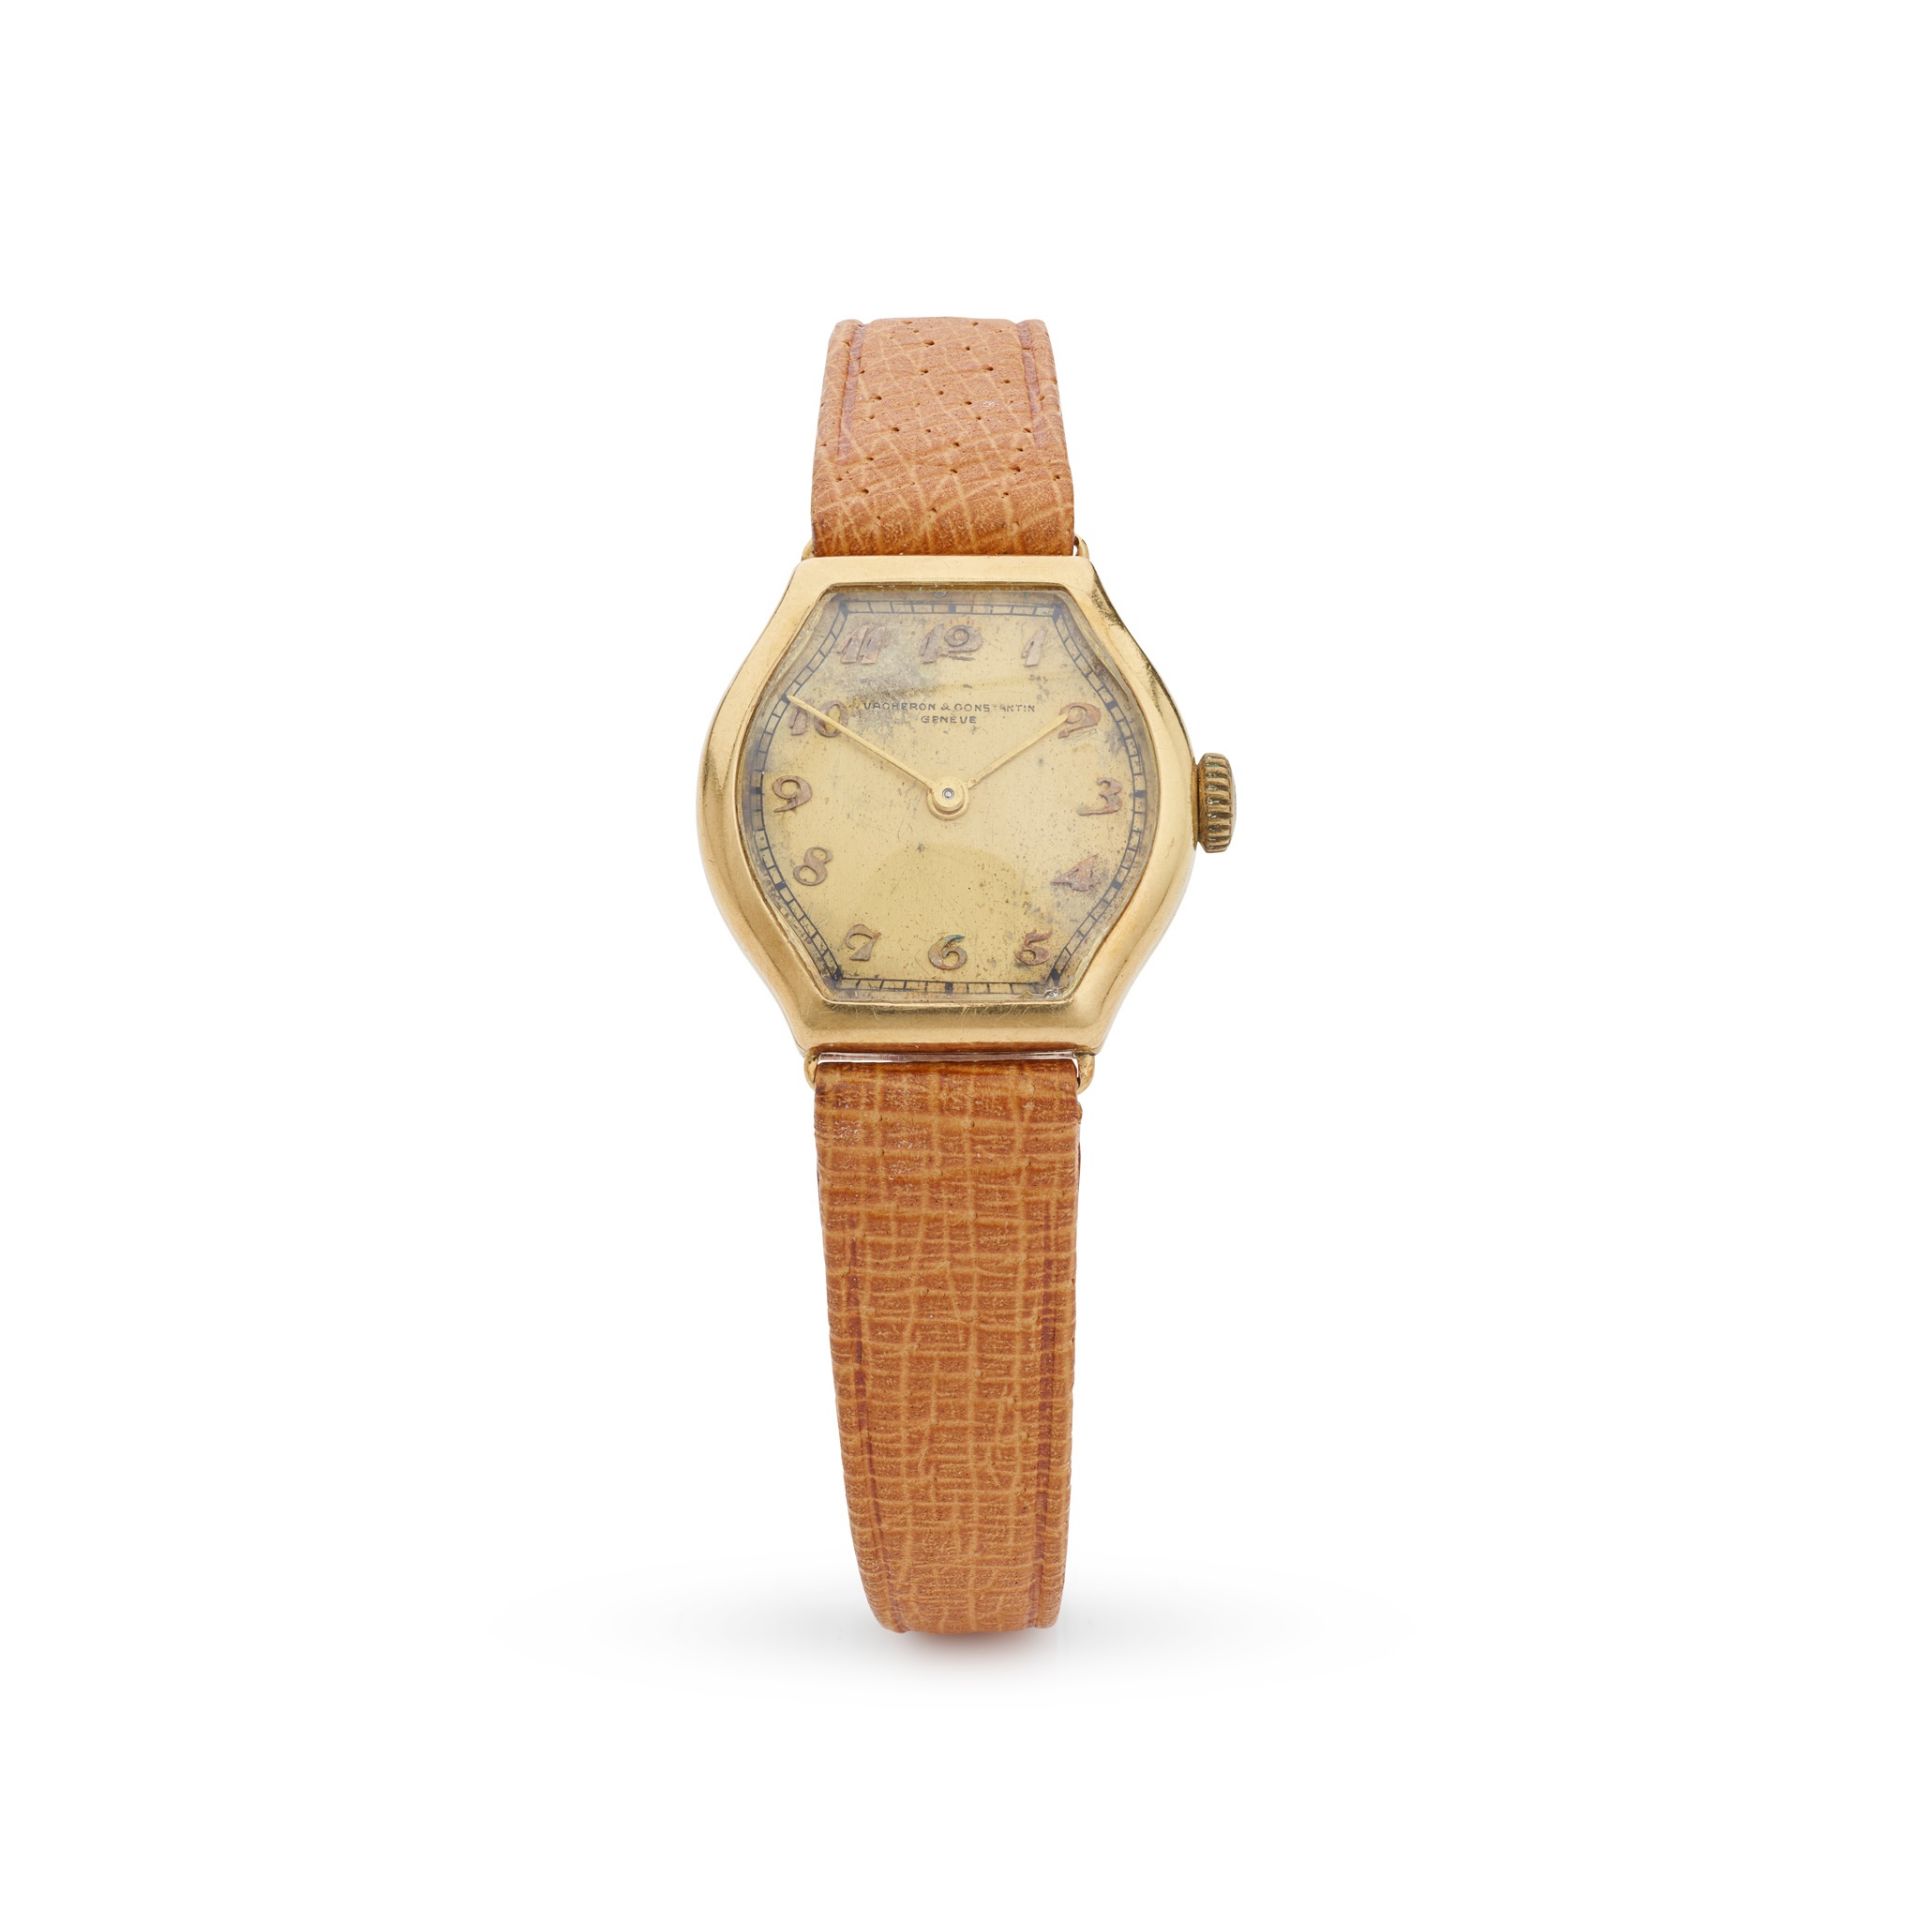 Vacheron Constantin: an Art Deco wrist watch